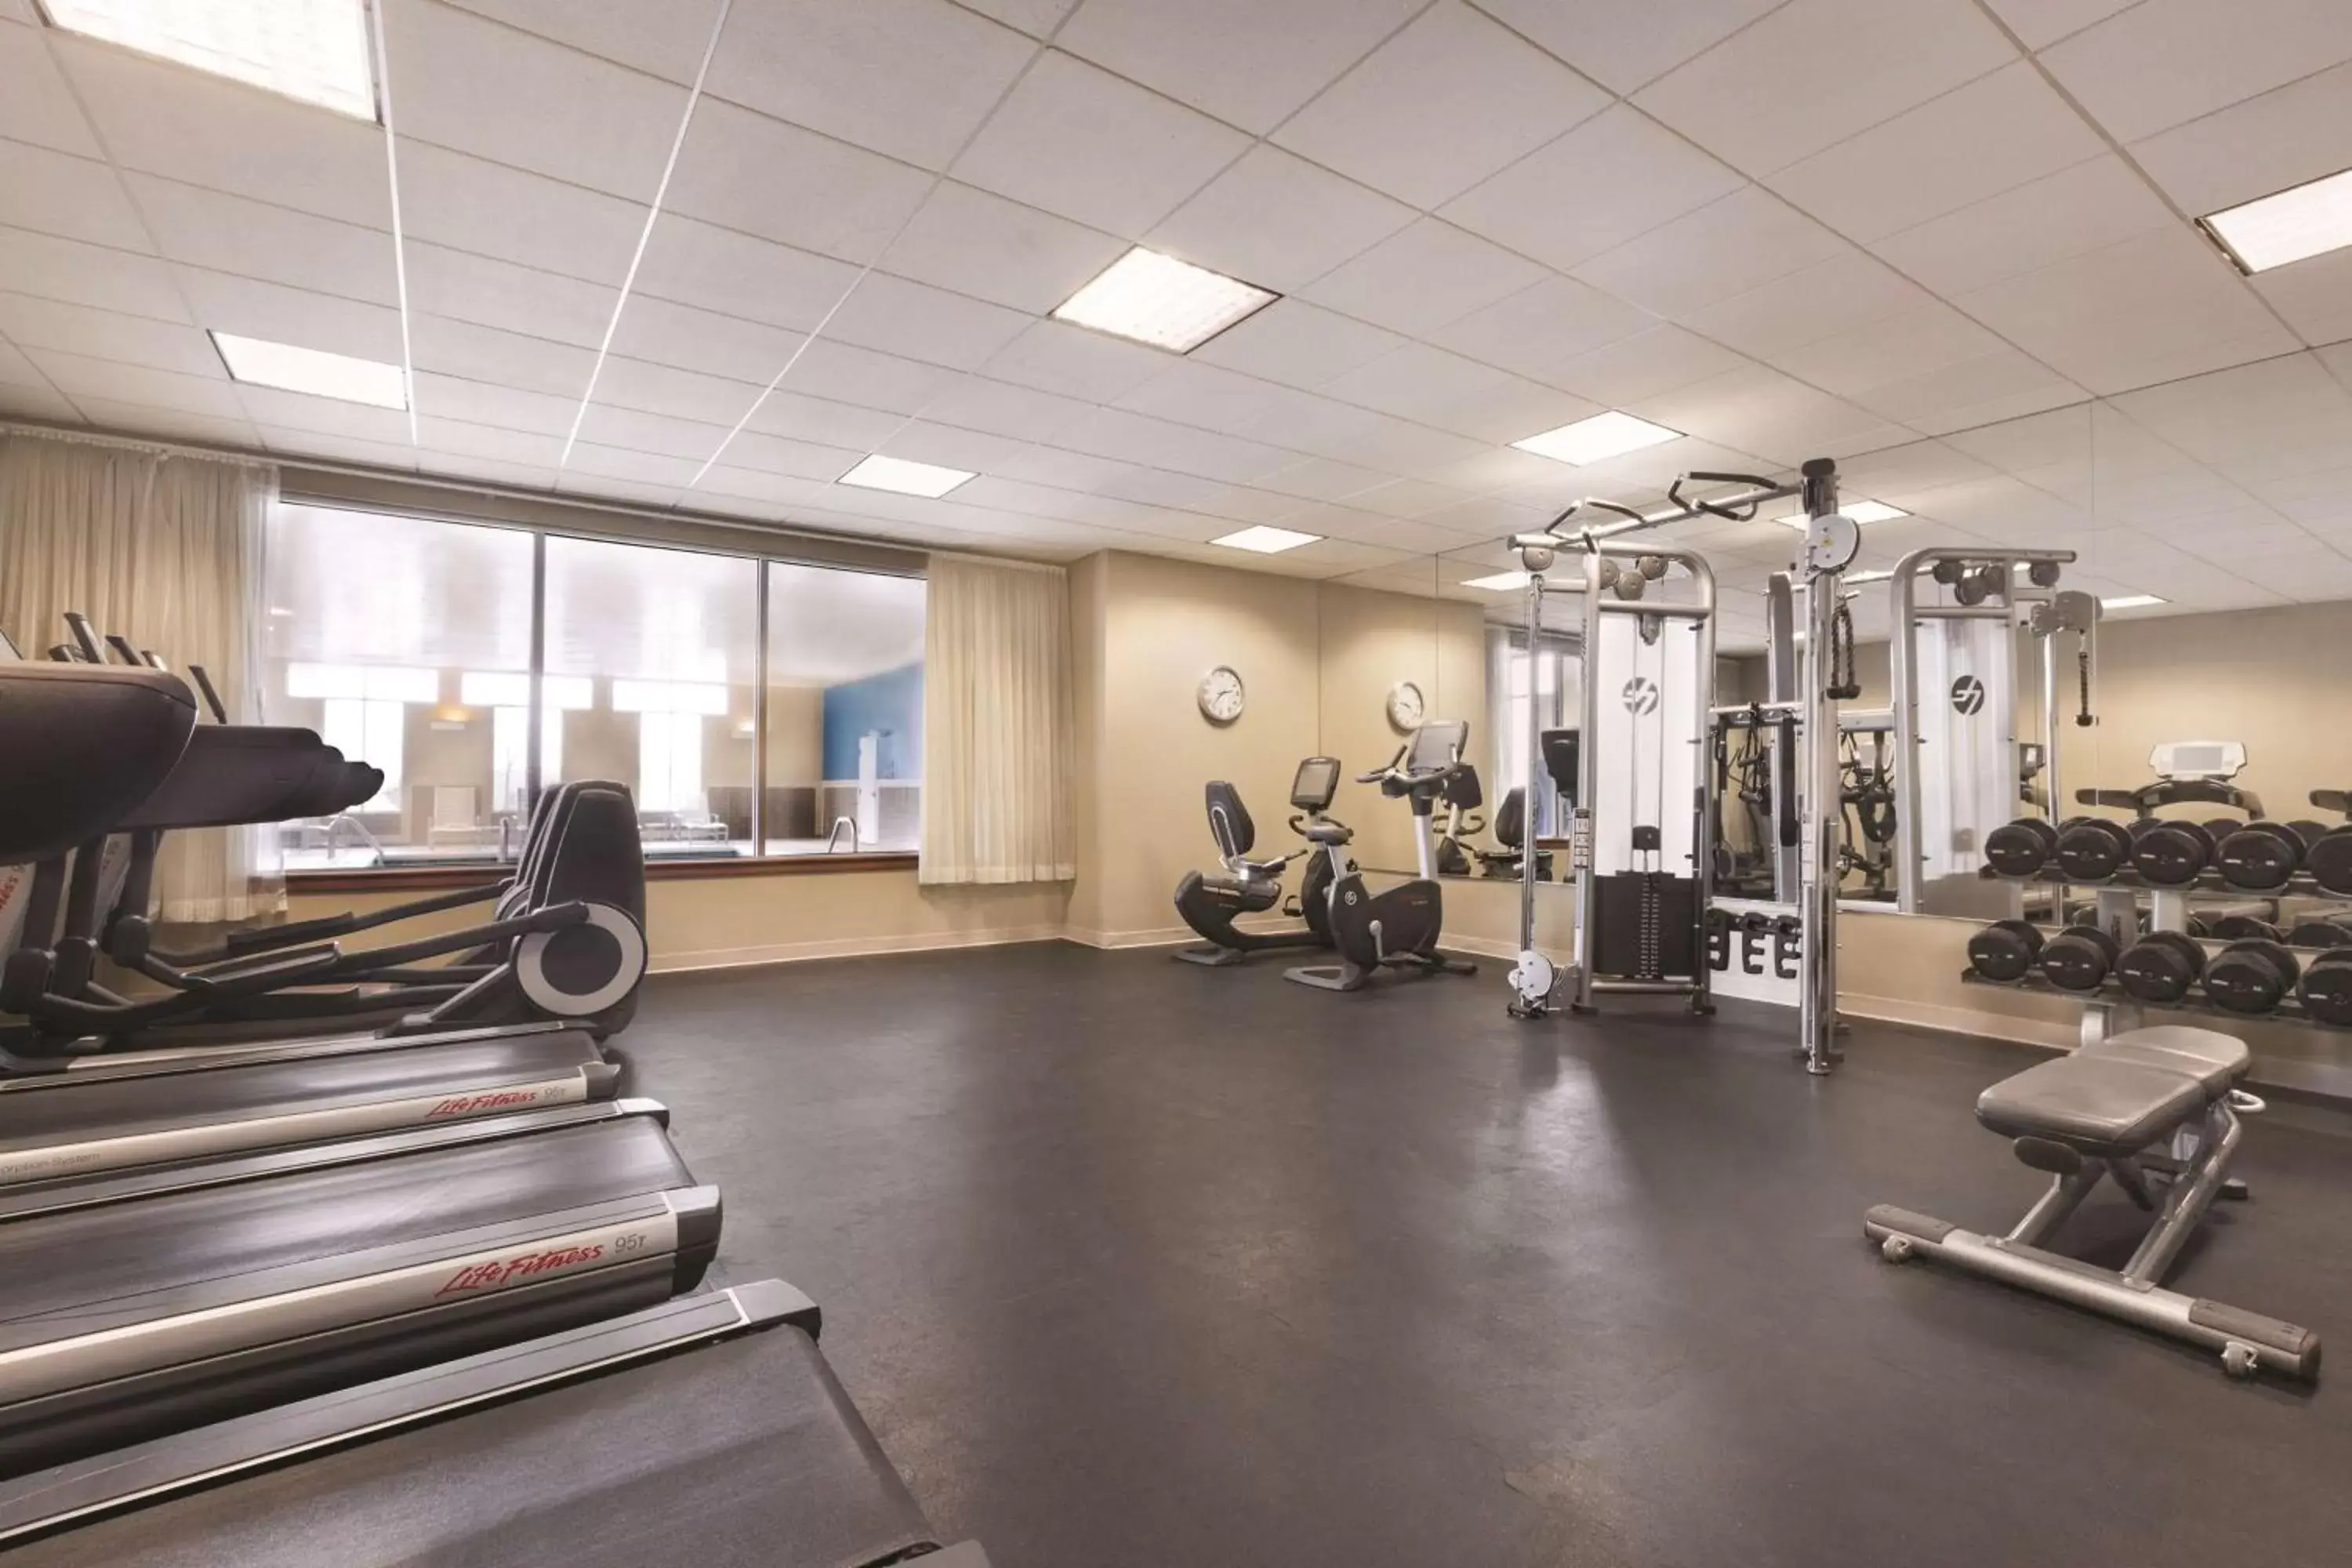 Fitness centre/facilities, Fitness Center/Facilities in Hyatt House Denver Airport